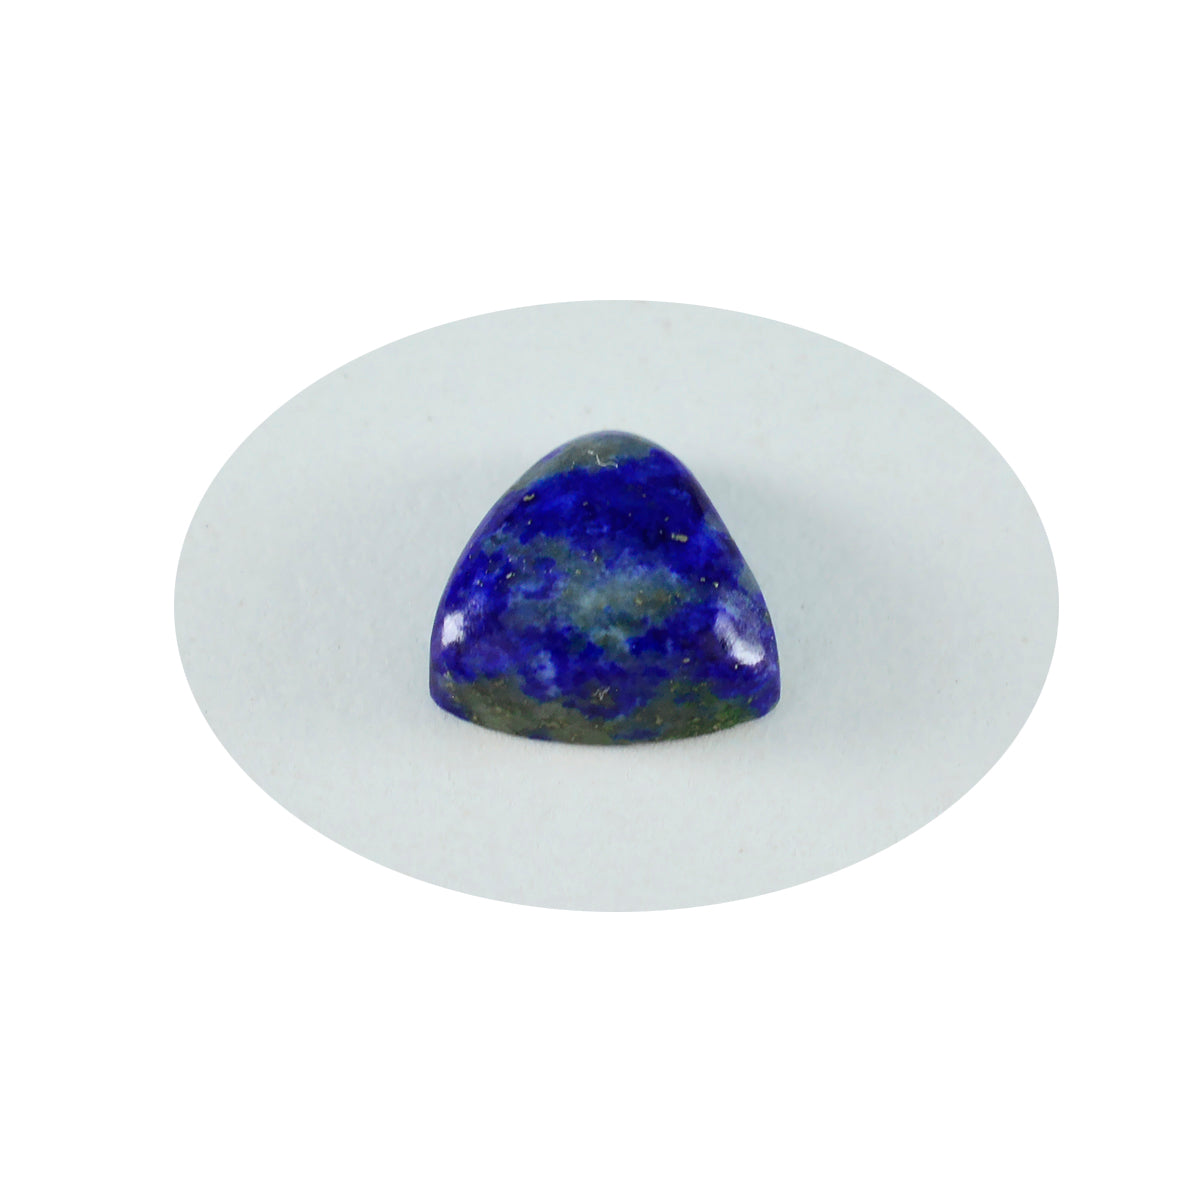 Riyogems 1PC blauwe lapis lazuli cabochon 11x11 mm biljoen vorm mooie kwaliteit steen